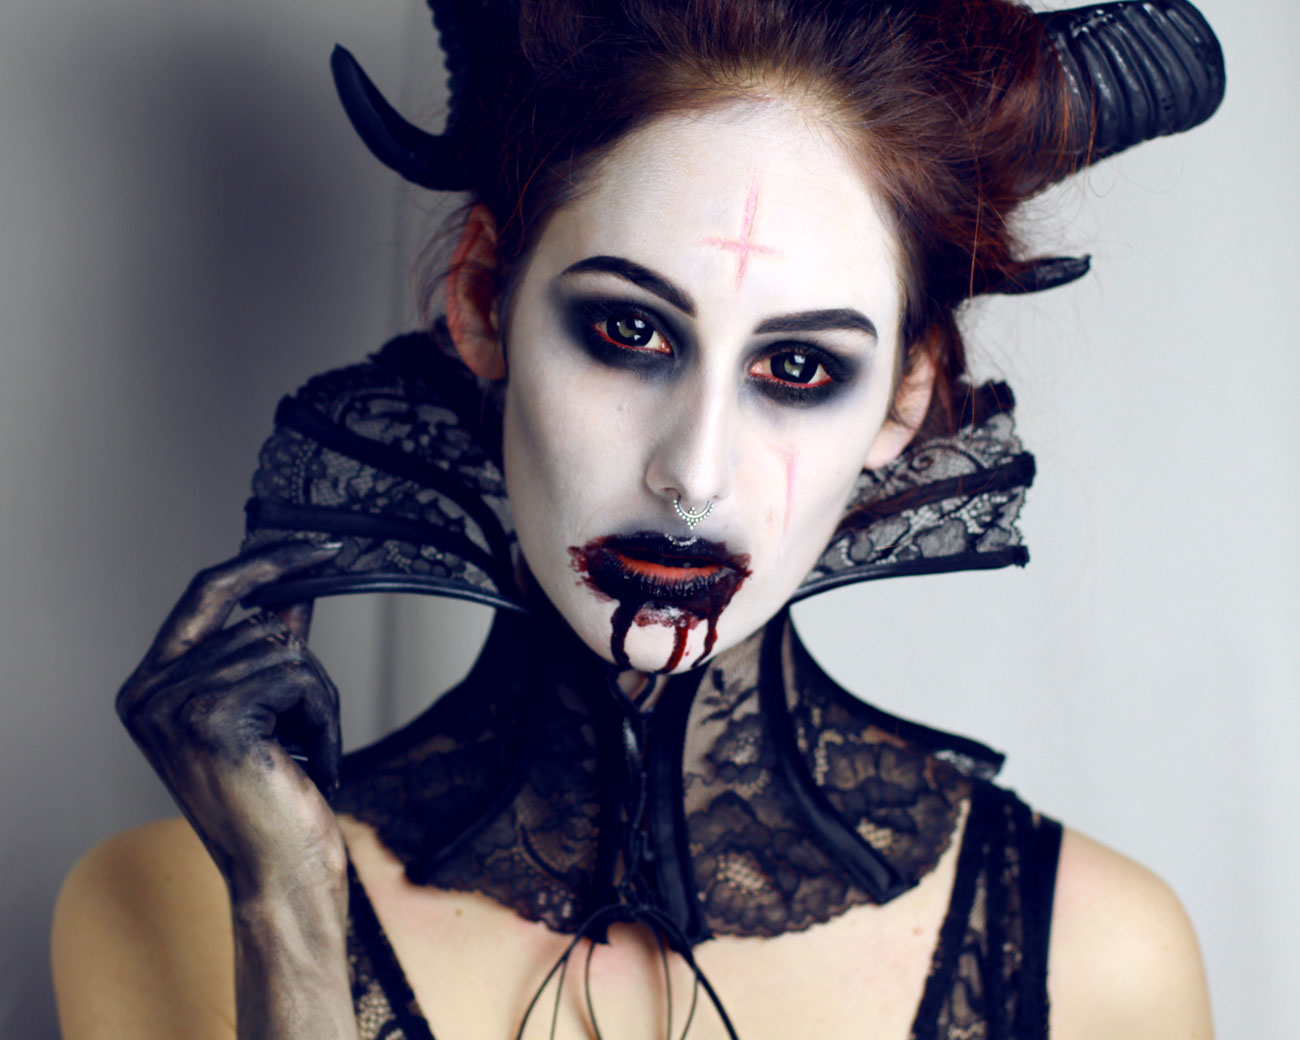 Satanic demon makeup